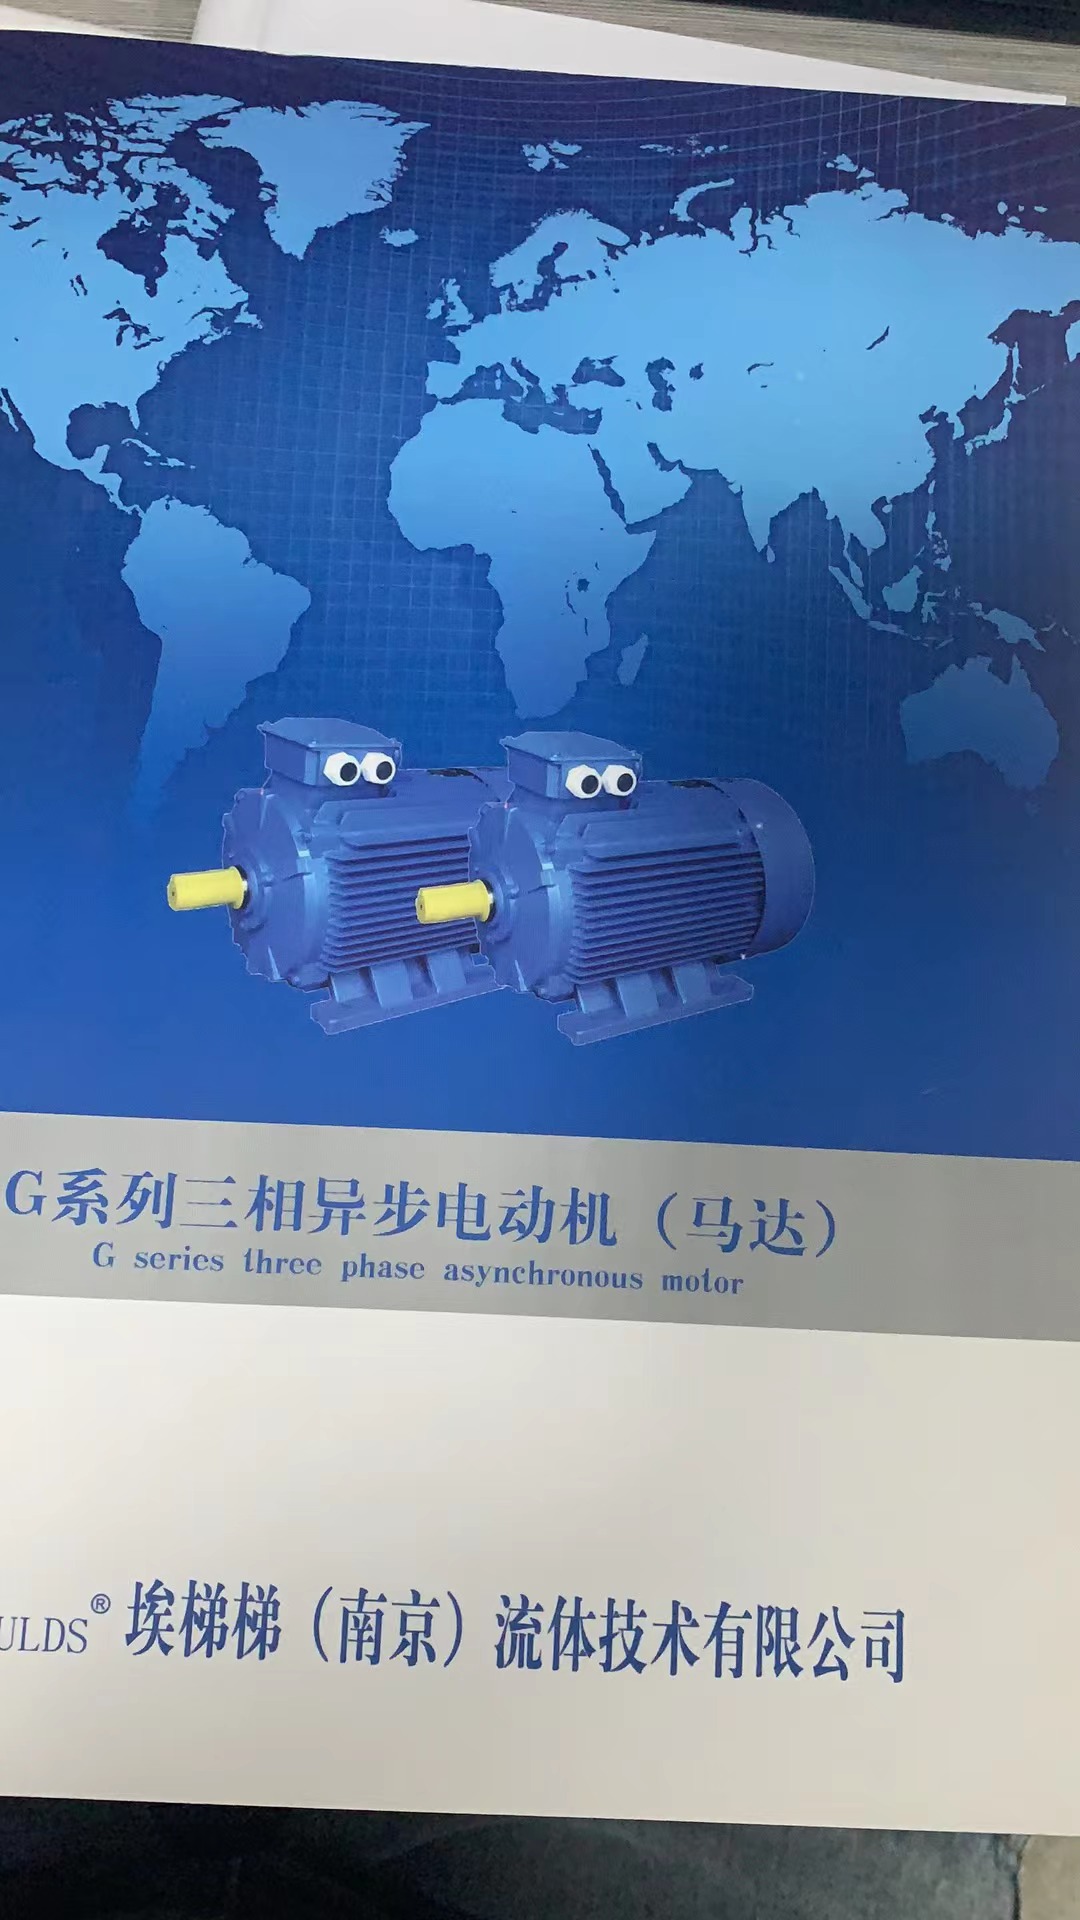 埃梯梯（南京）流体技术有限公司